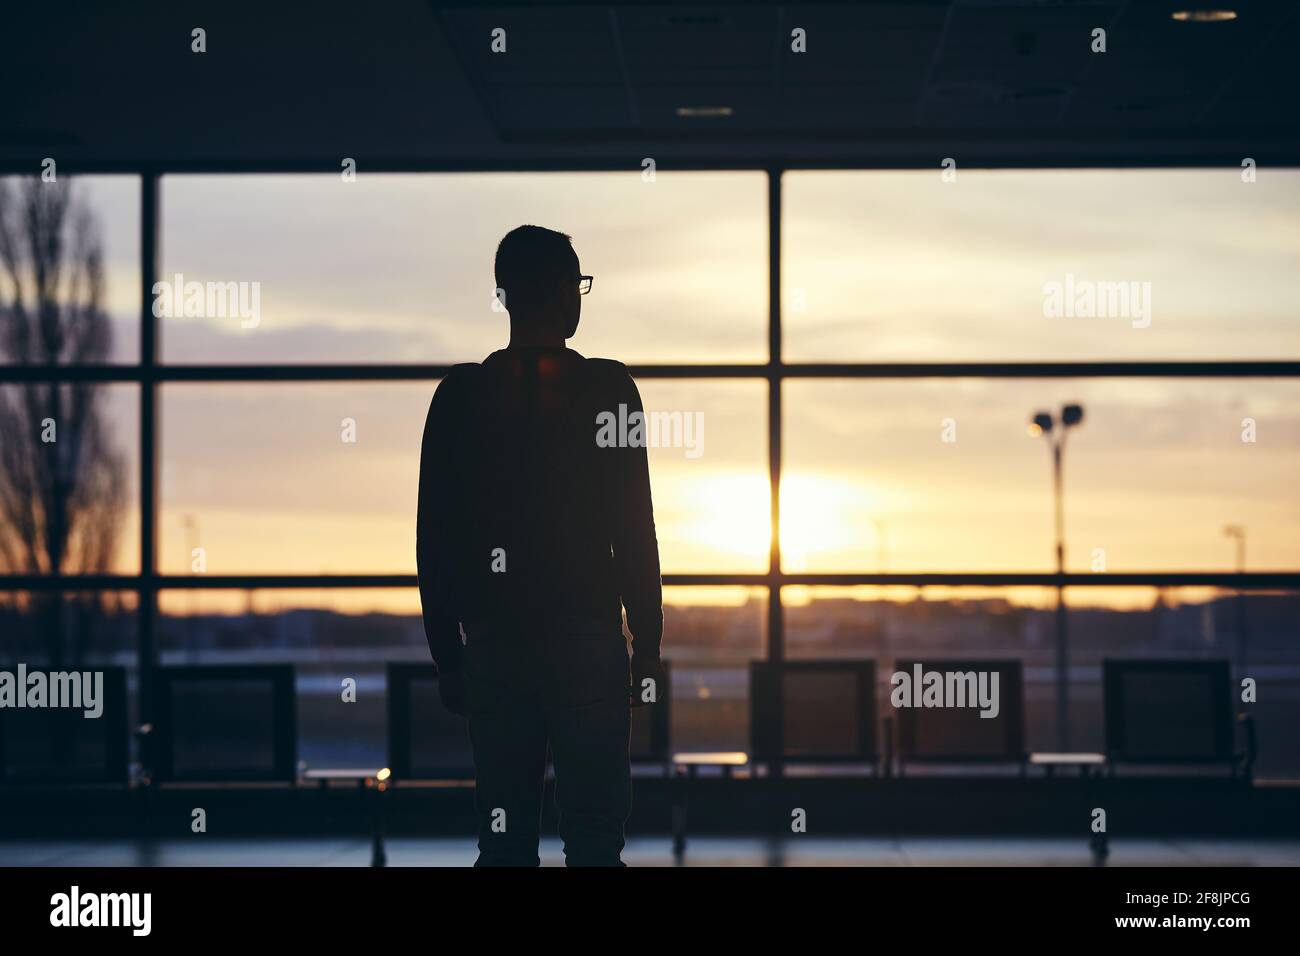 Nachdenklicher Passagier, der auf das Flugzeug wartet. Silhouette eines Mannes am Flughafen bei Sonnenaufgang. Stockfoto